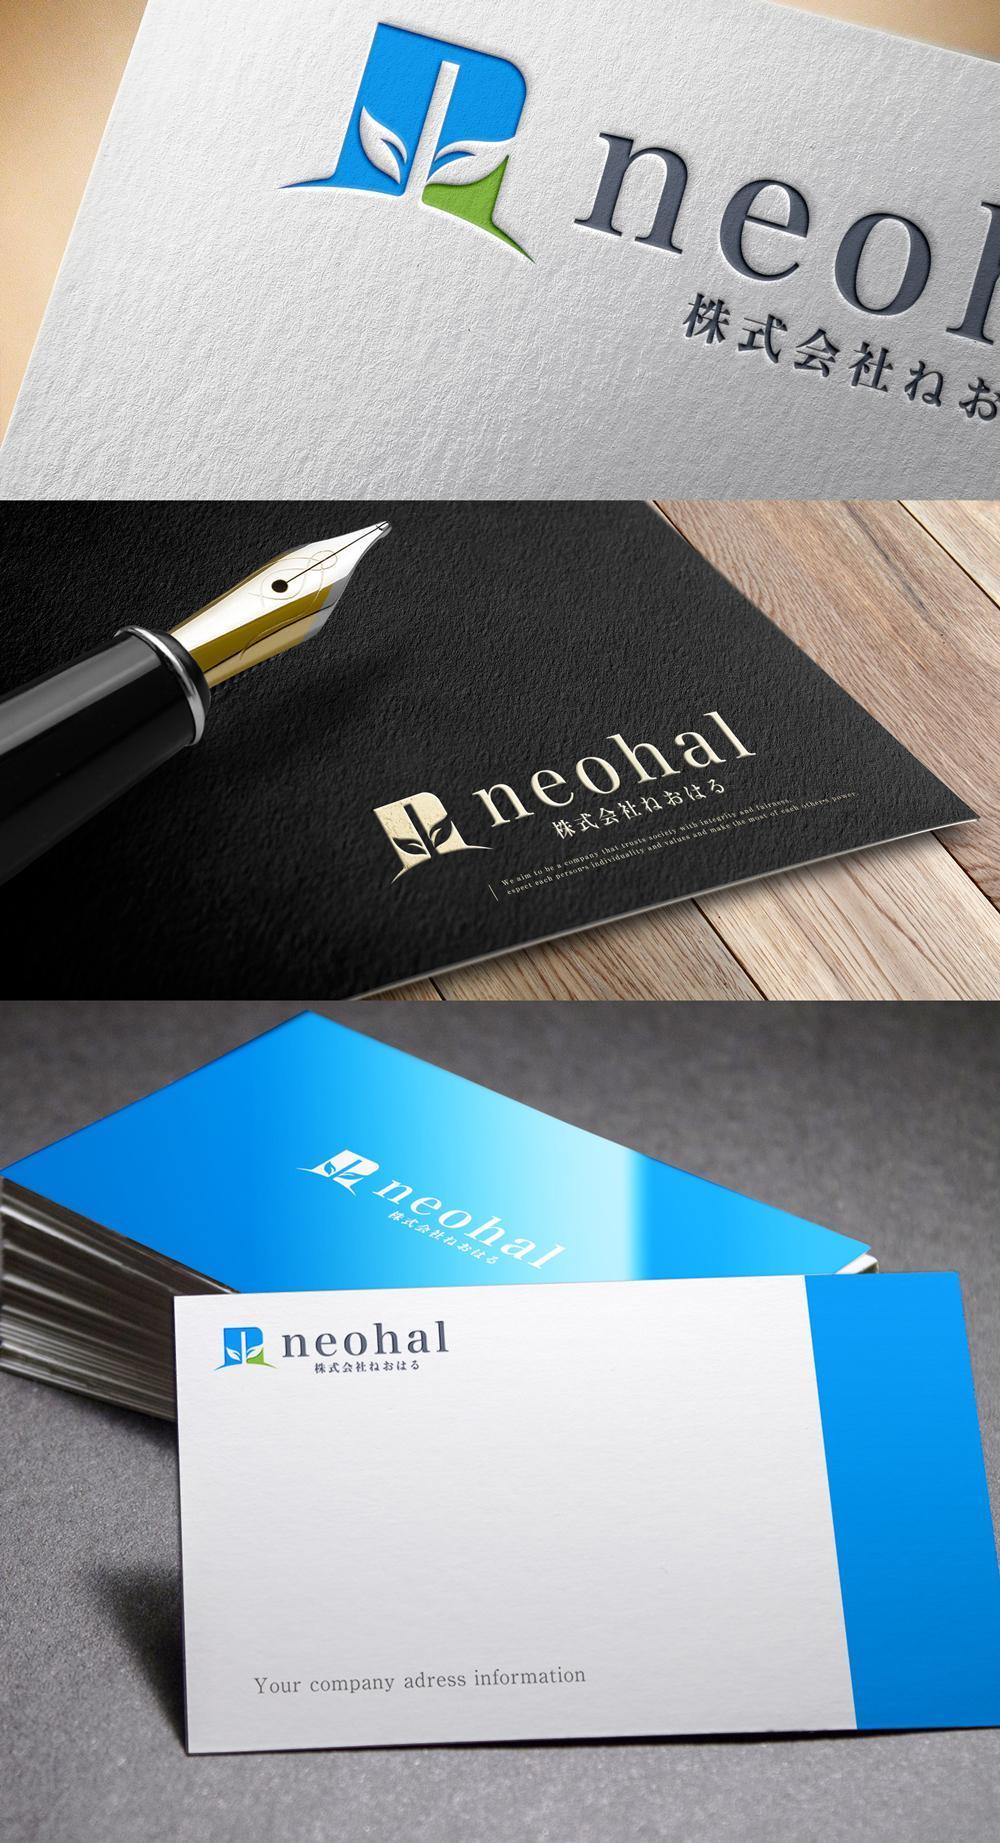 障がい者の就労支援事業所「株式会社neohal ねおはる」のロゴ